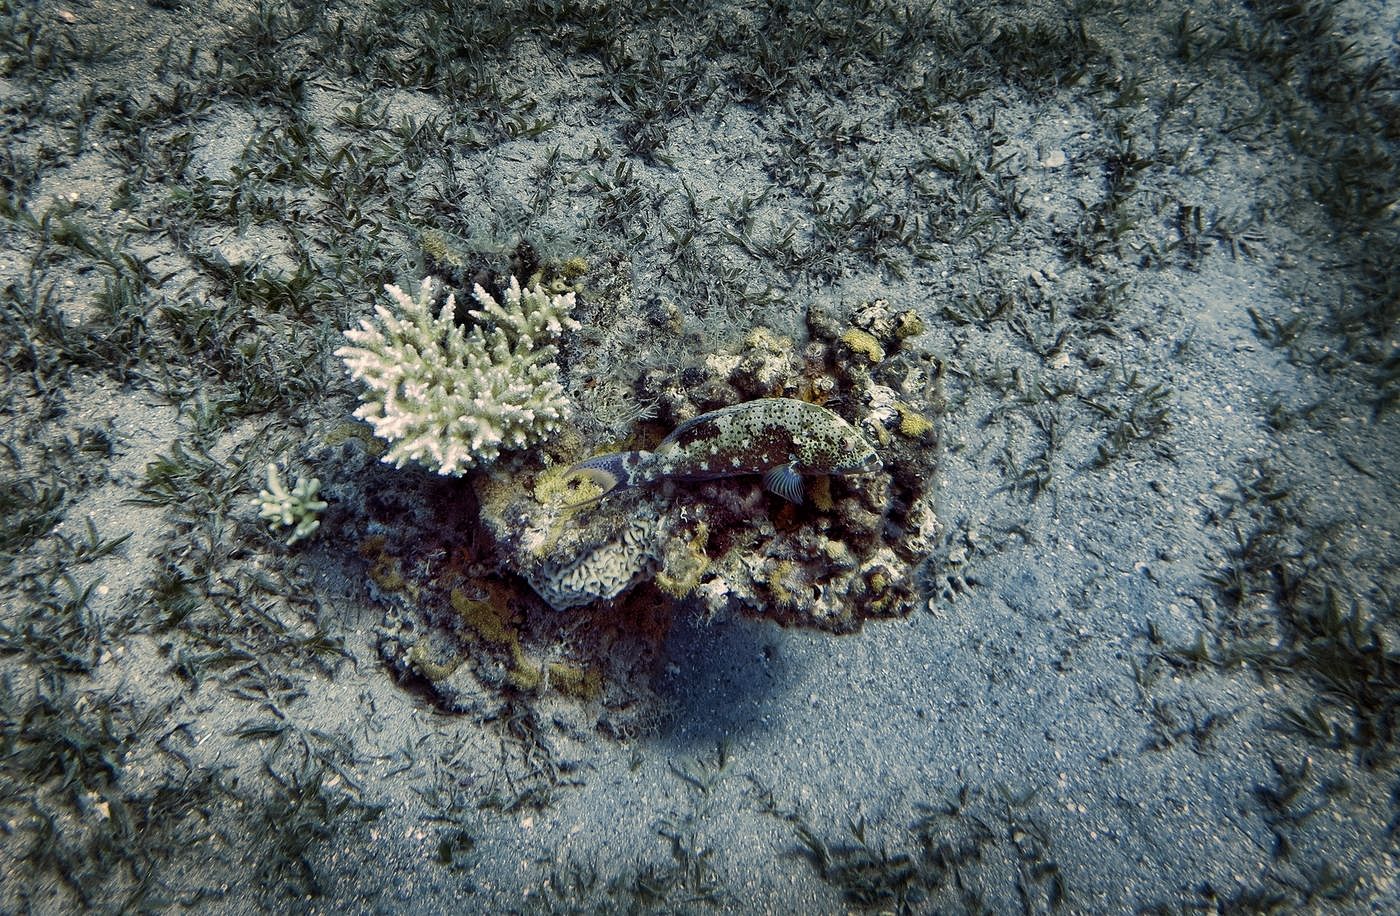 Хамелеоны коралловых рифов